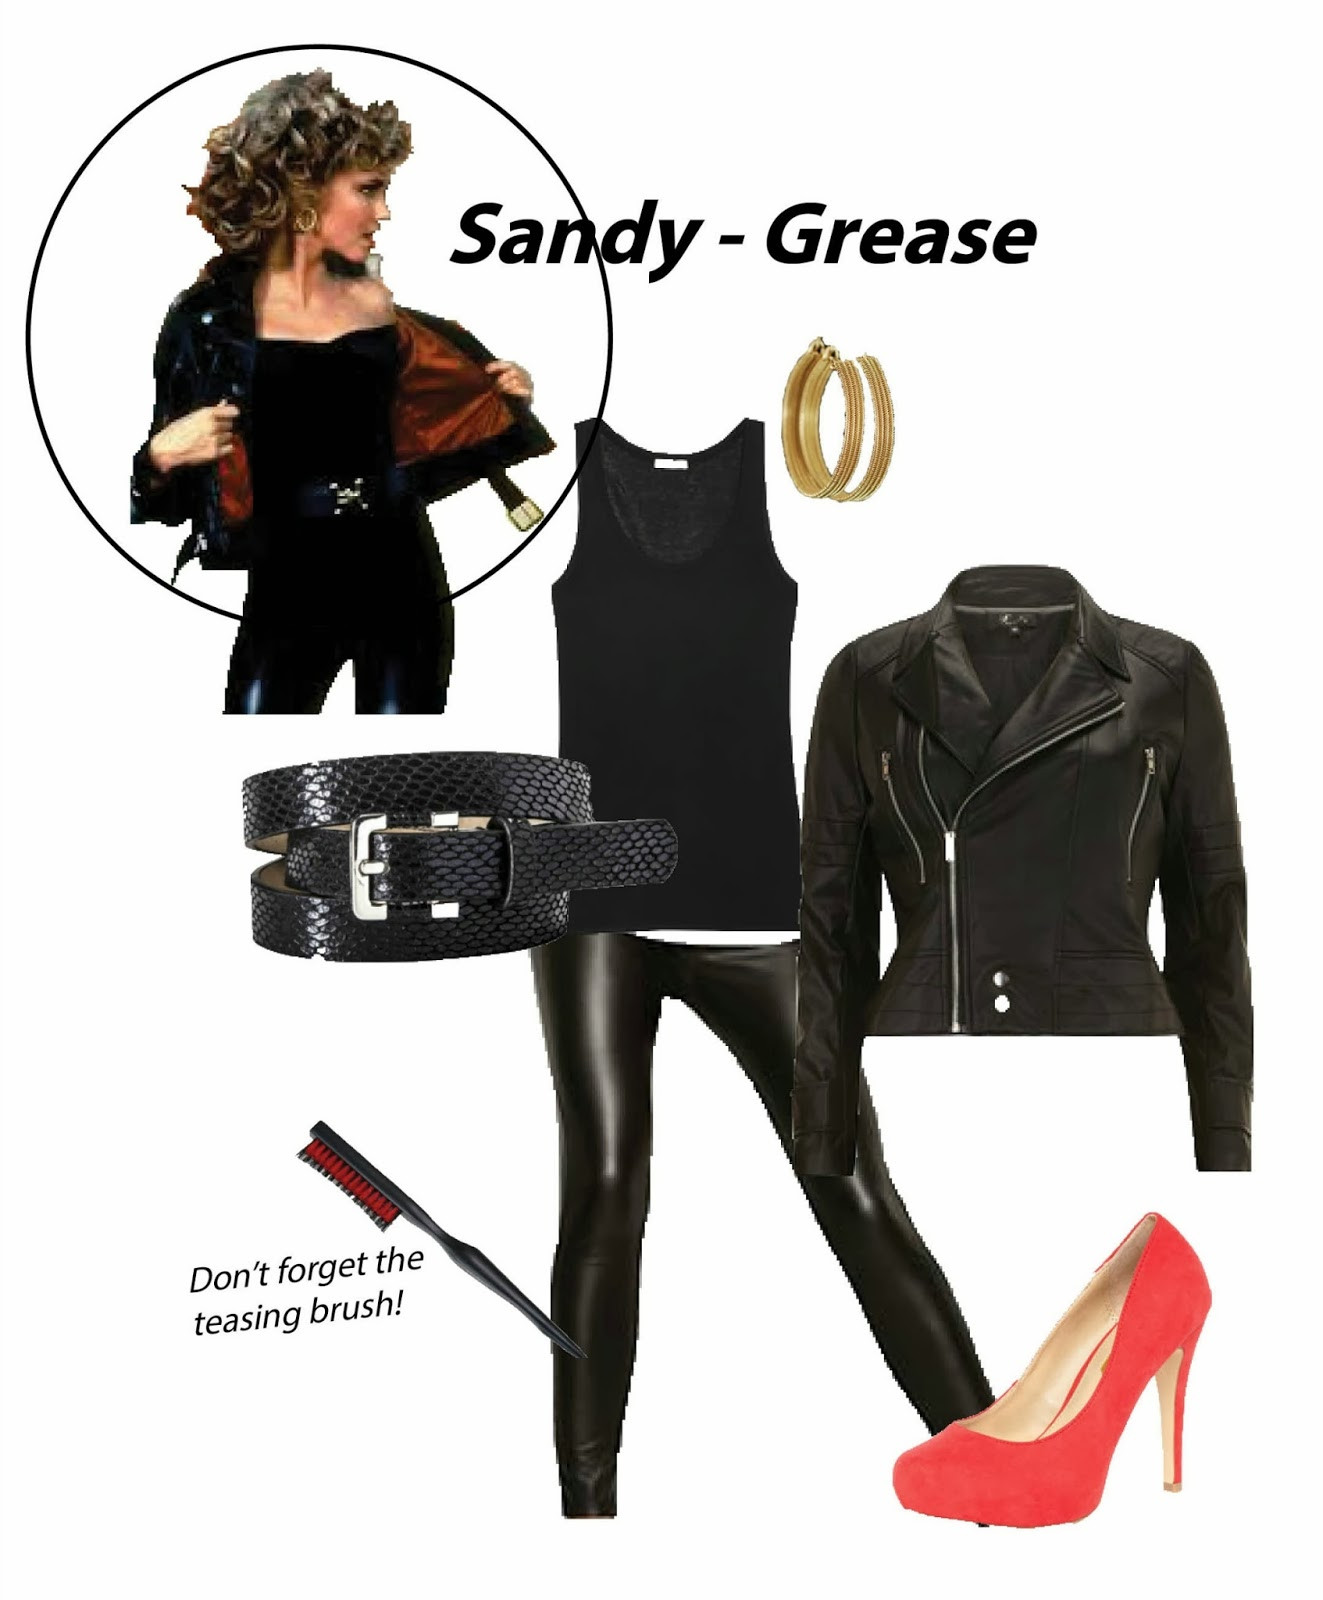 Sandy Grease Costume DIY
 Last Minute DIY Halloween s